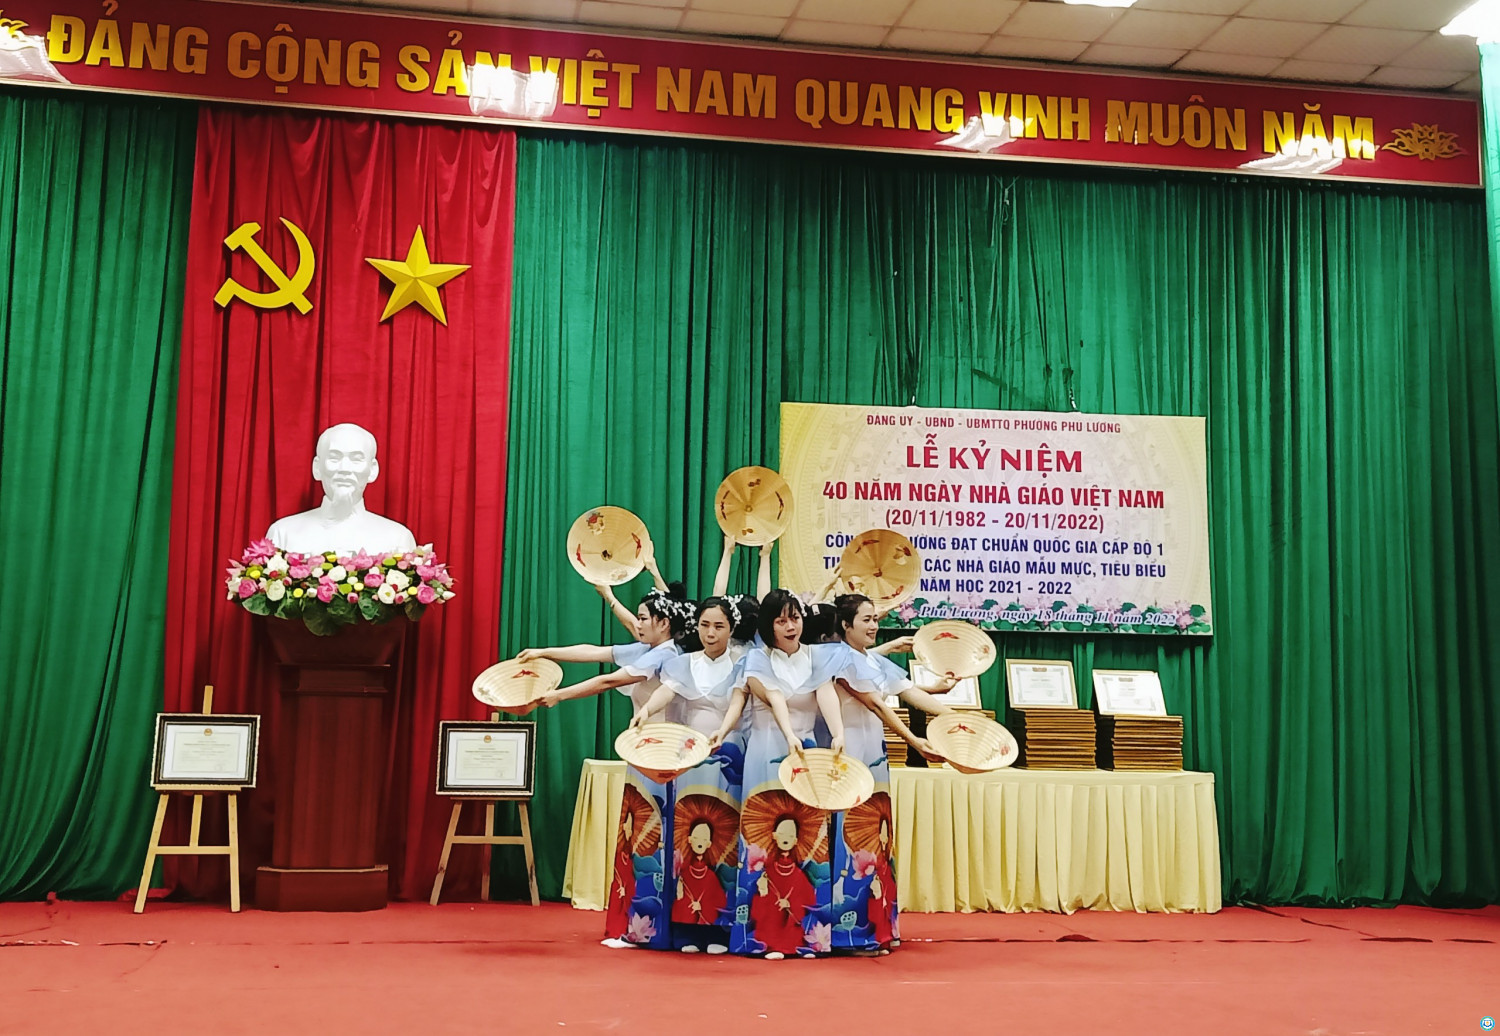 1,4 Tiết mục múa của các cô giáo trường MN Phú Lương